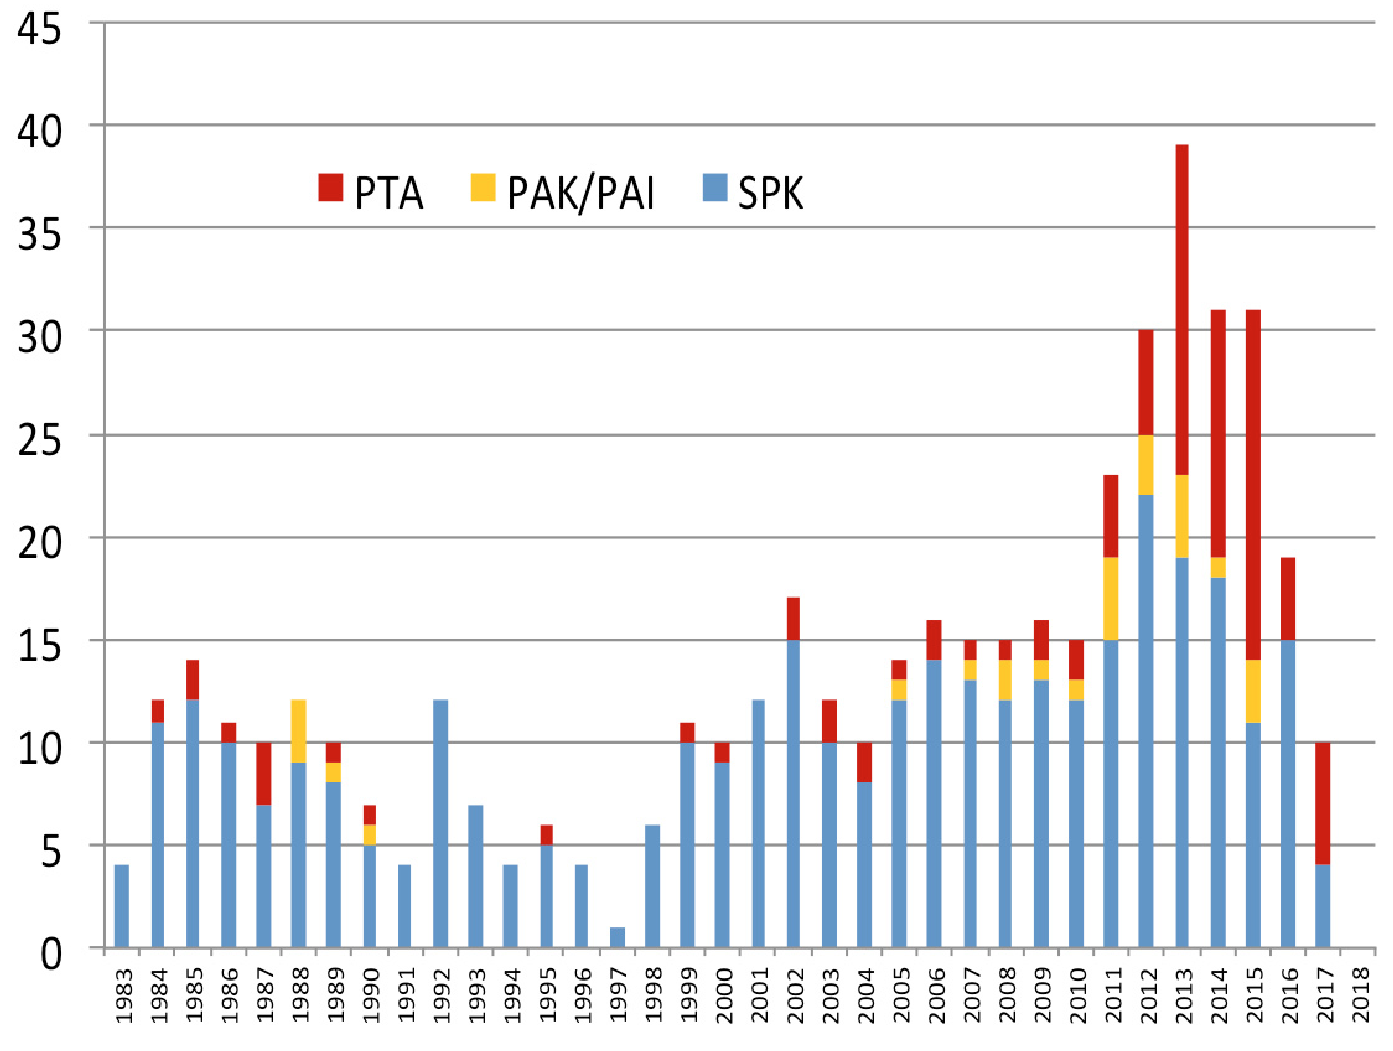 Figur 1. Oversikt over Pancreastransplantasjonsvirksomheten i Norge siden 1983 og frem til medio april 2017. Merk den markante økningen i singel Ptx (PTA, PAK, PAI)